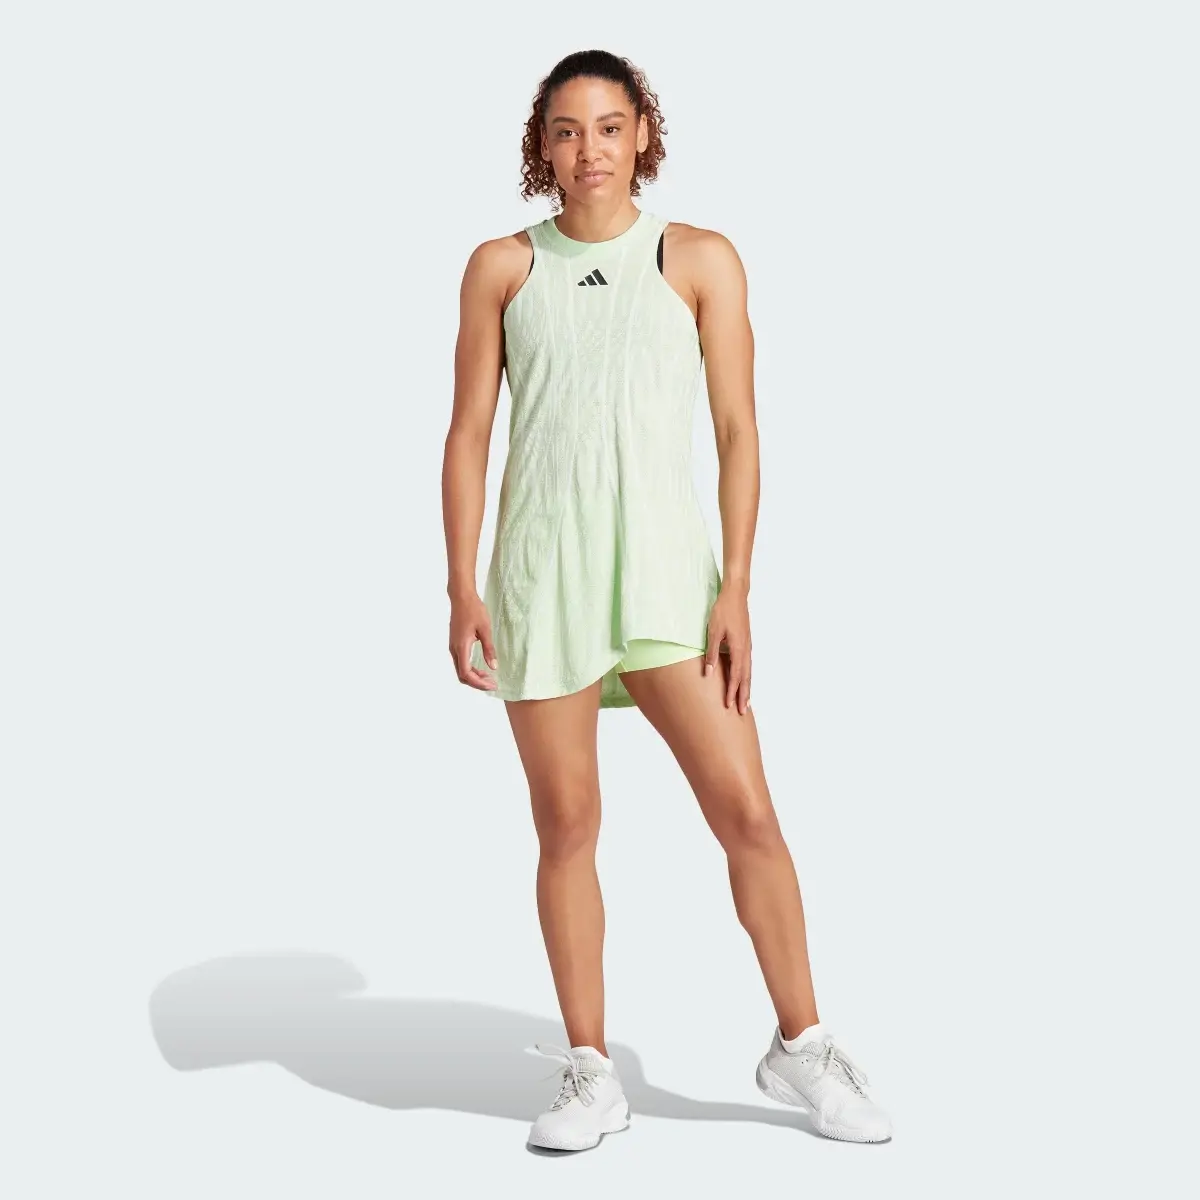 Adidas Tennis Airchill Pro Dress. 2